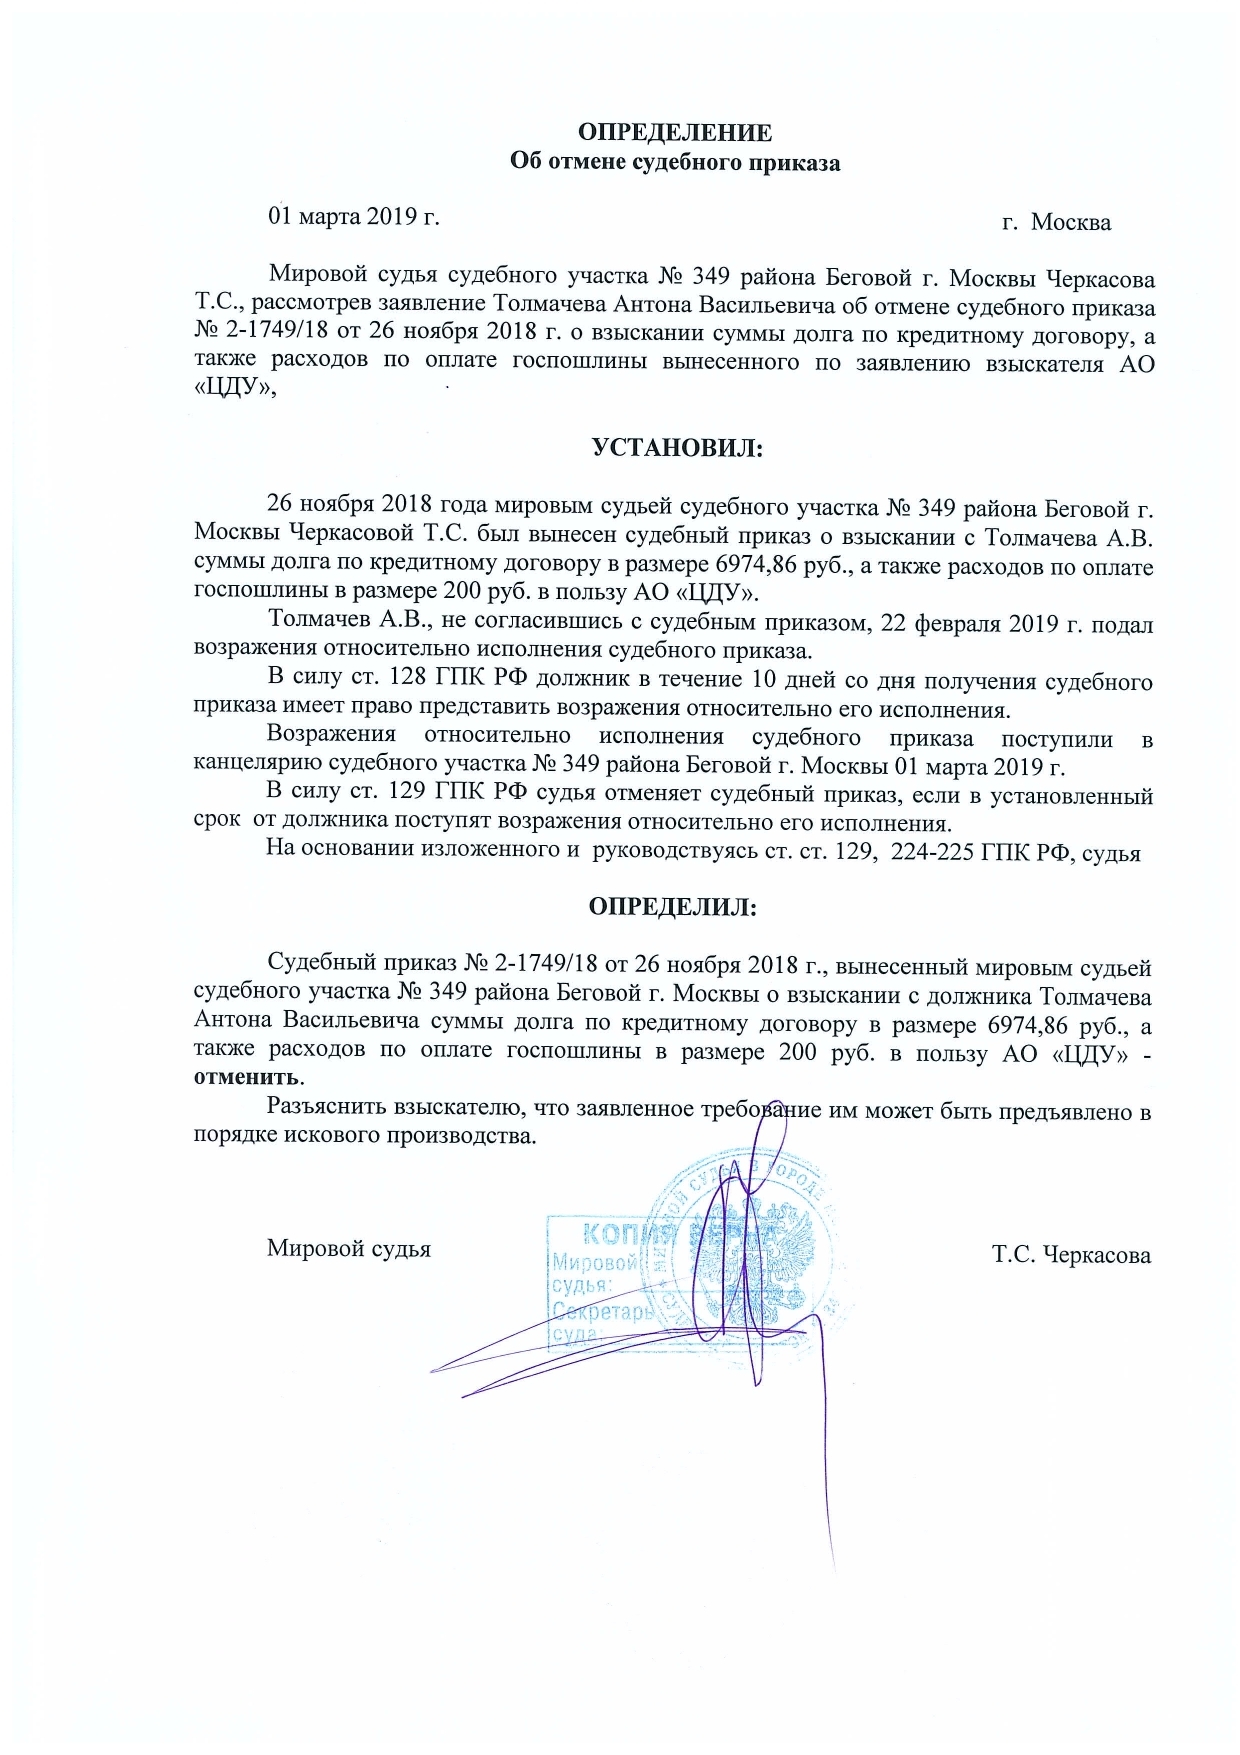 кредит на погашение судебной задолженности лента акции москва каталог сегодня 2020 года москва